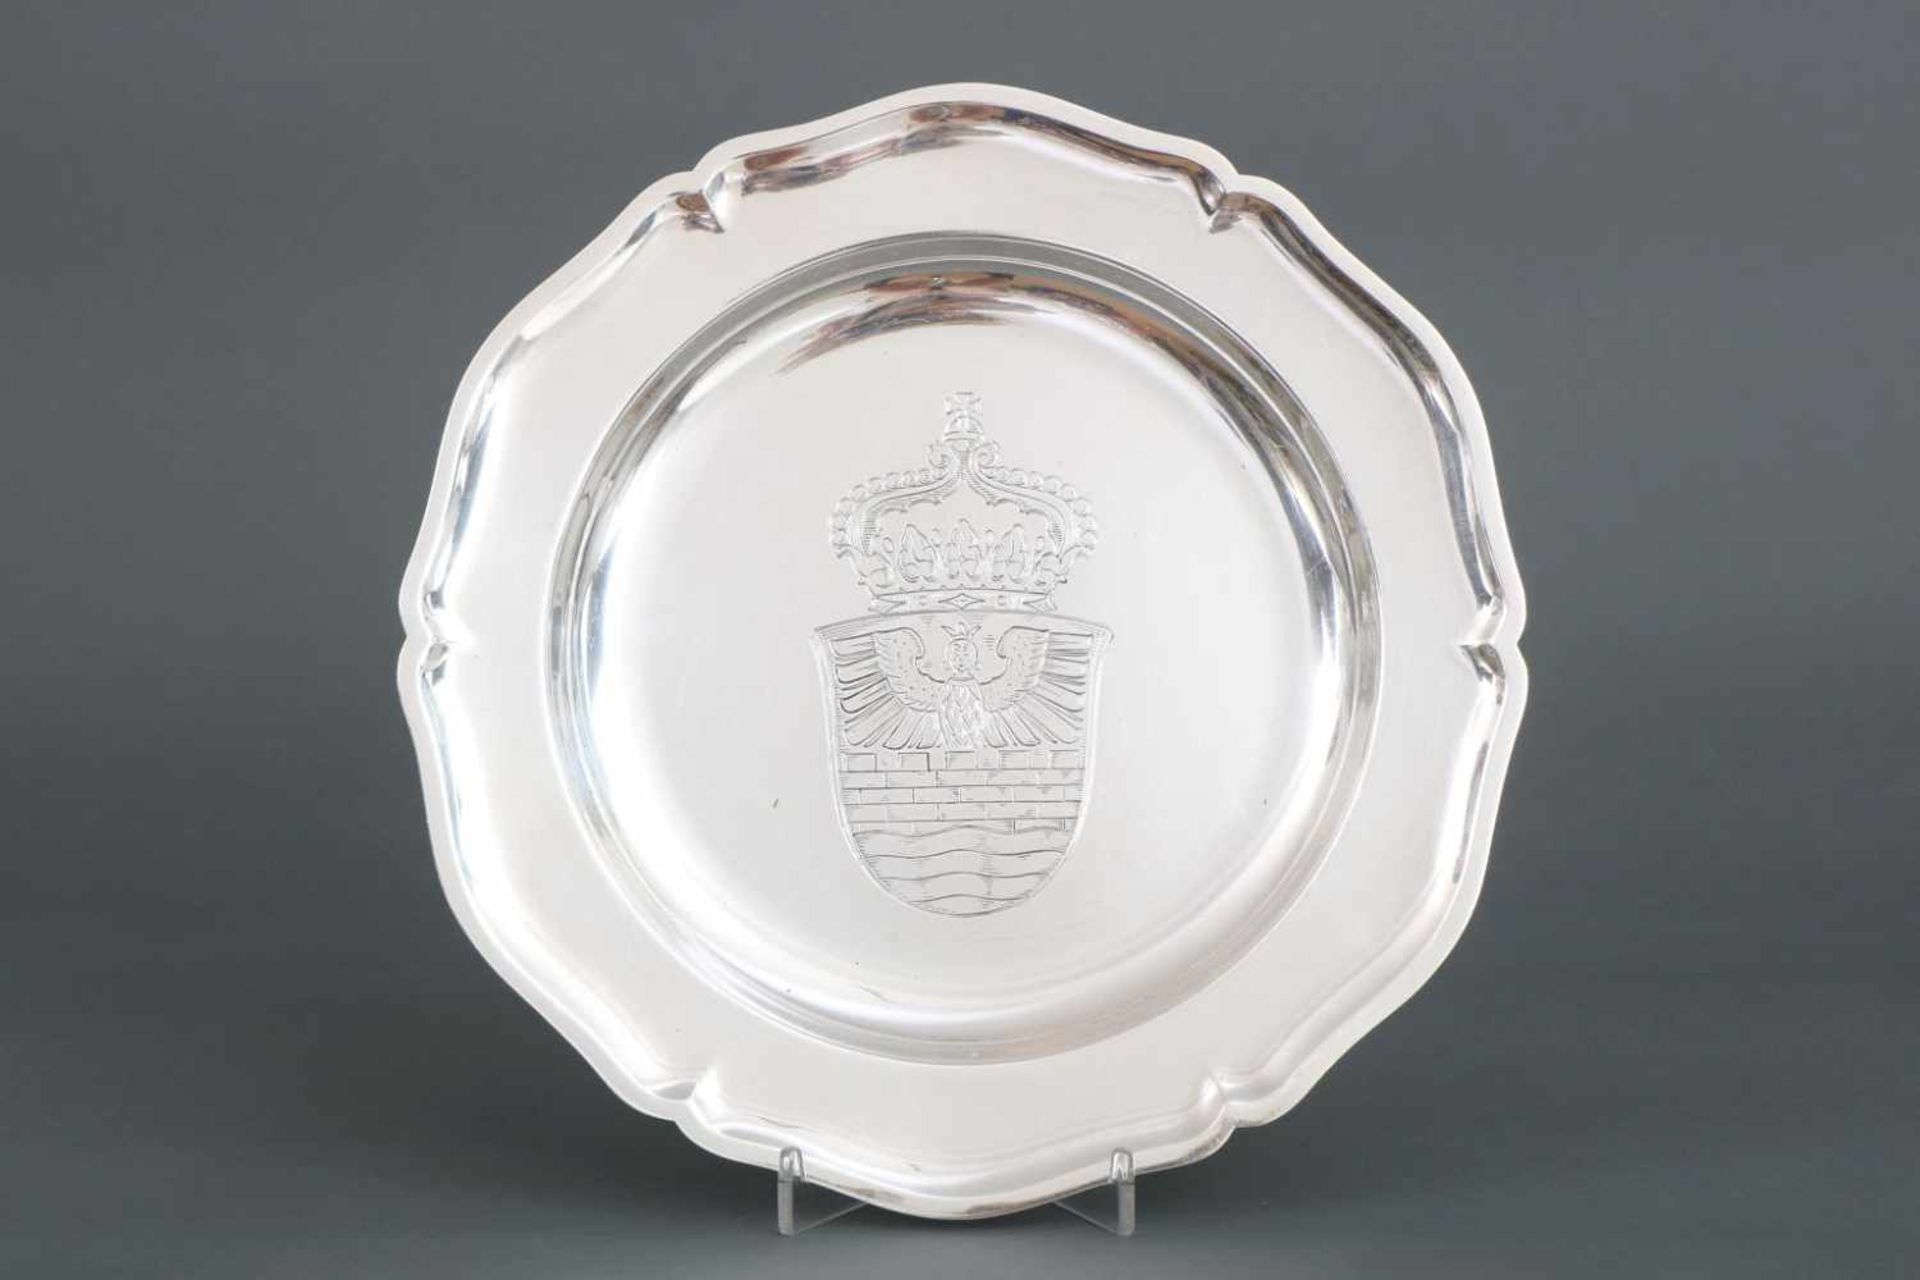 Silber Teller830er Silber, Wilkens um 1950, runde, passige Form, im vertieften Spiegel